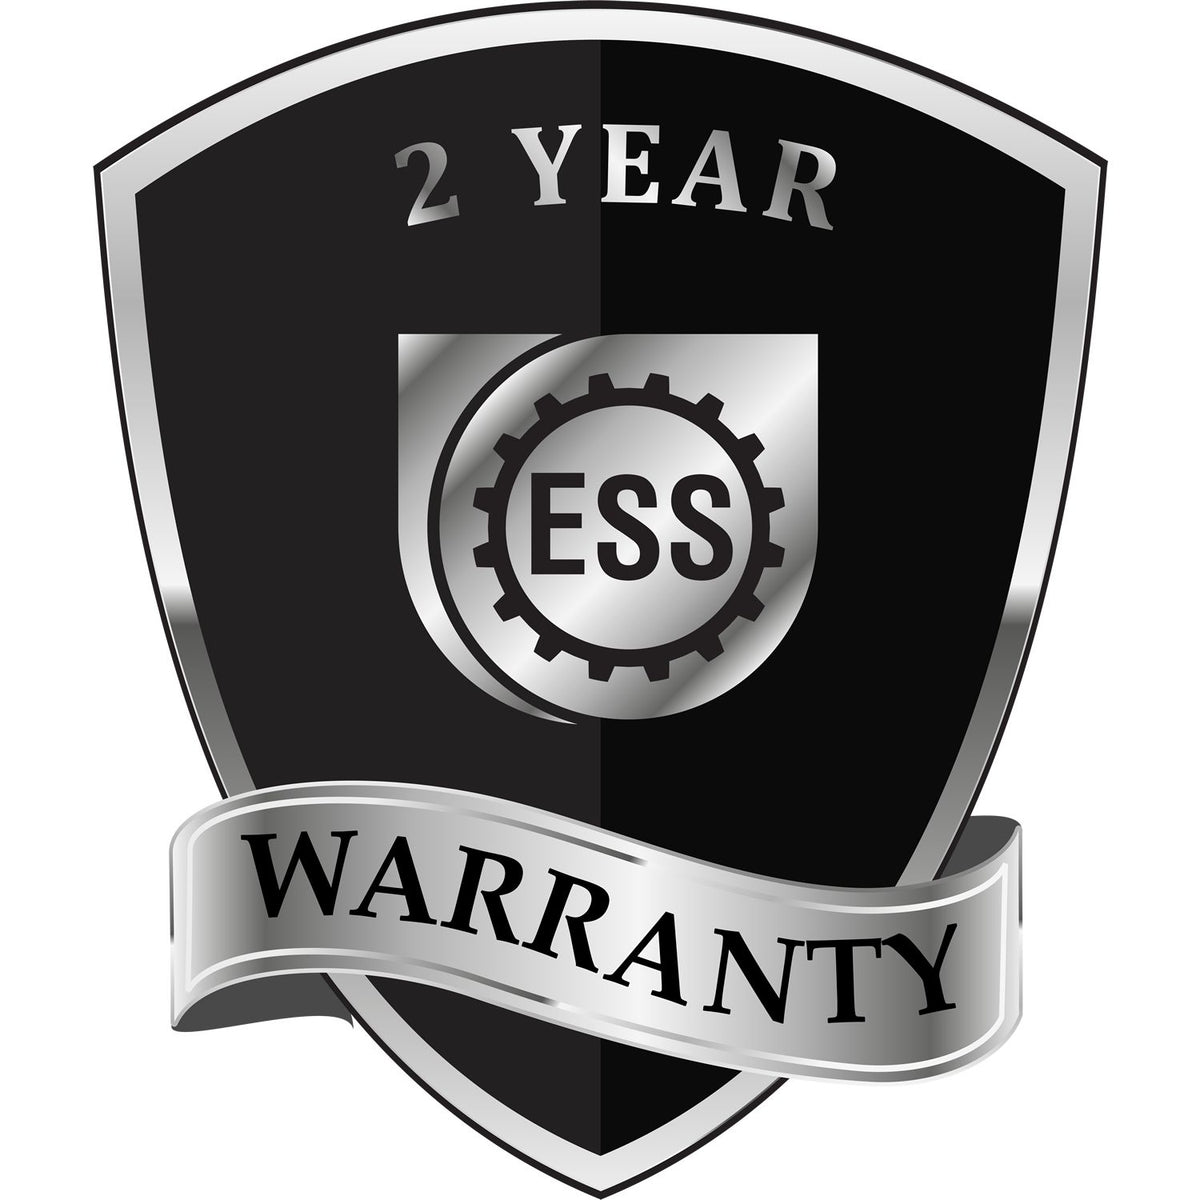 A black and silver badge or emblem showing warranty information for the Nebraska Geologist Desk Seal